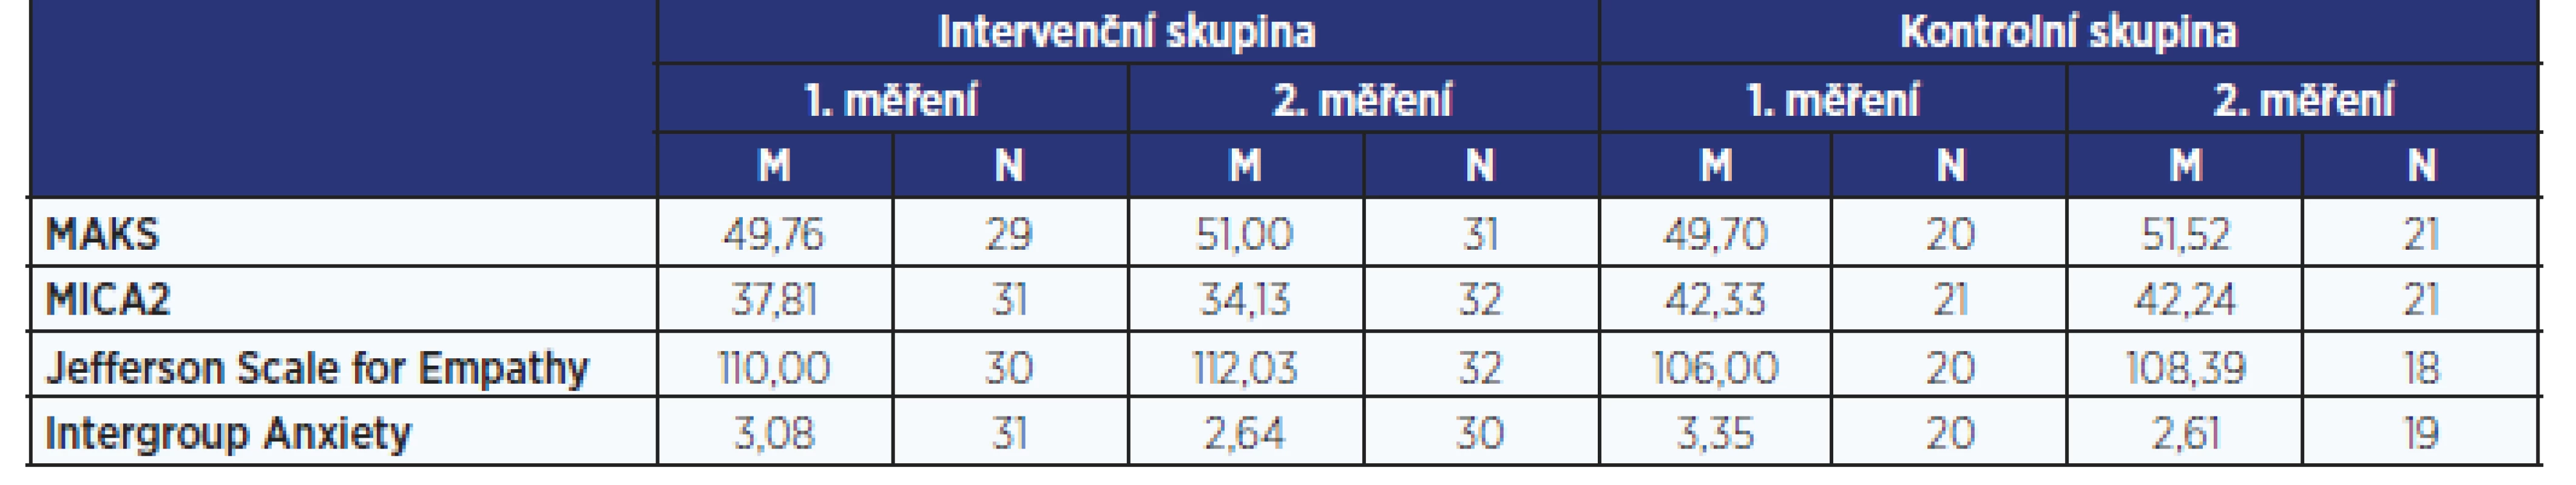 Průměrné hodnoty skóre na sledovaných škálách u intervenční a kontrolní skupiny v prvním a druhém měření